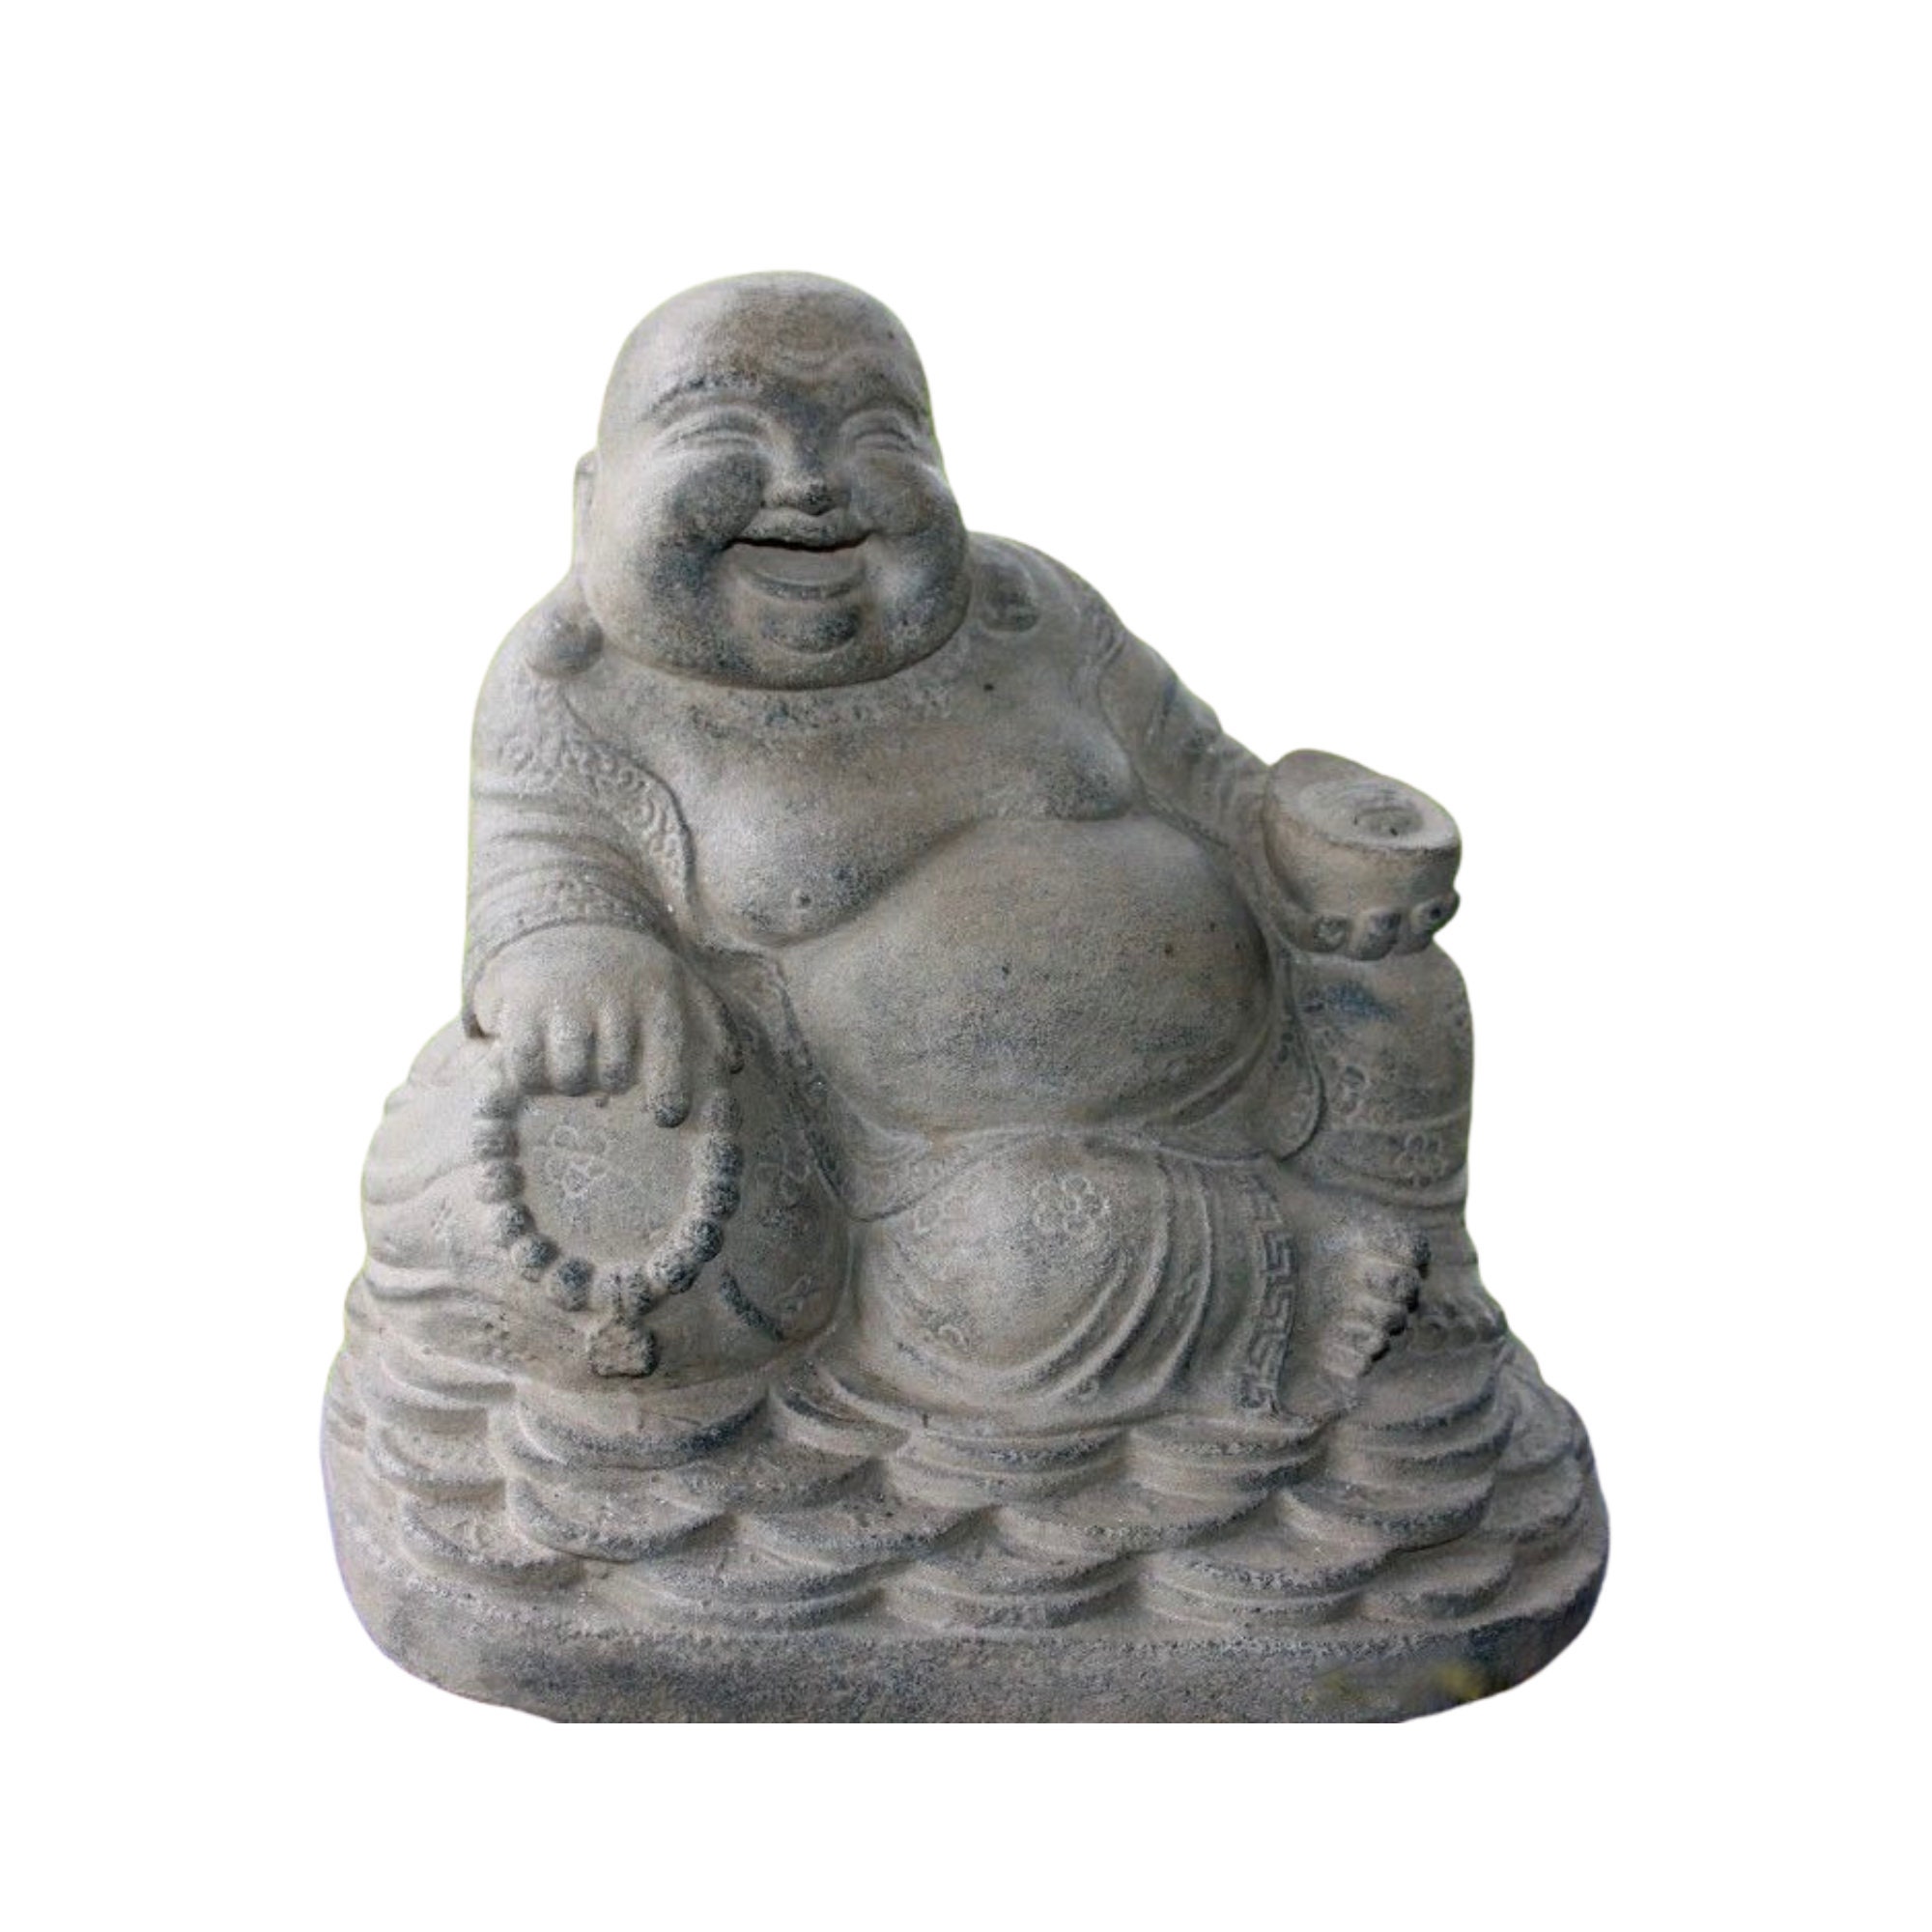 Hotei Budai Prosperity Laughing Buddha Garden Statue Handmade